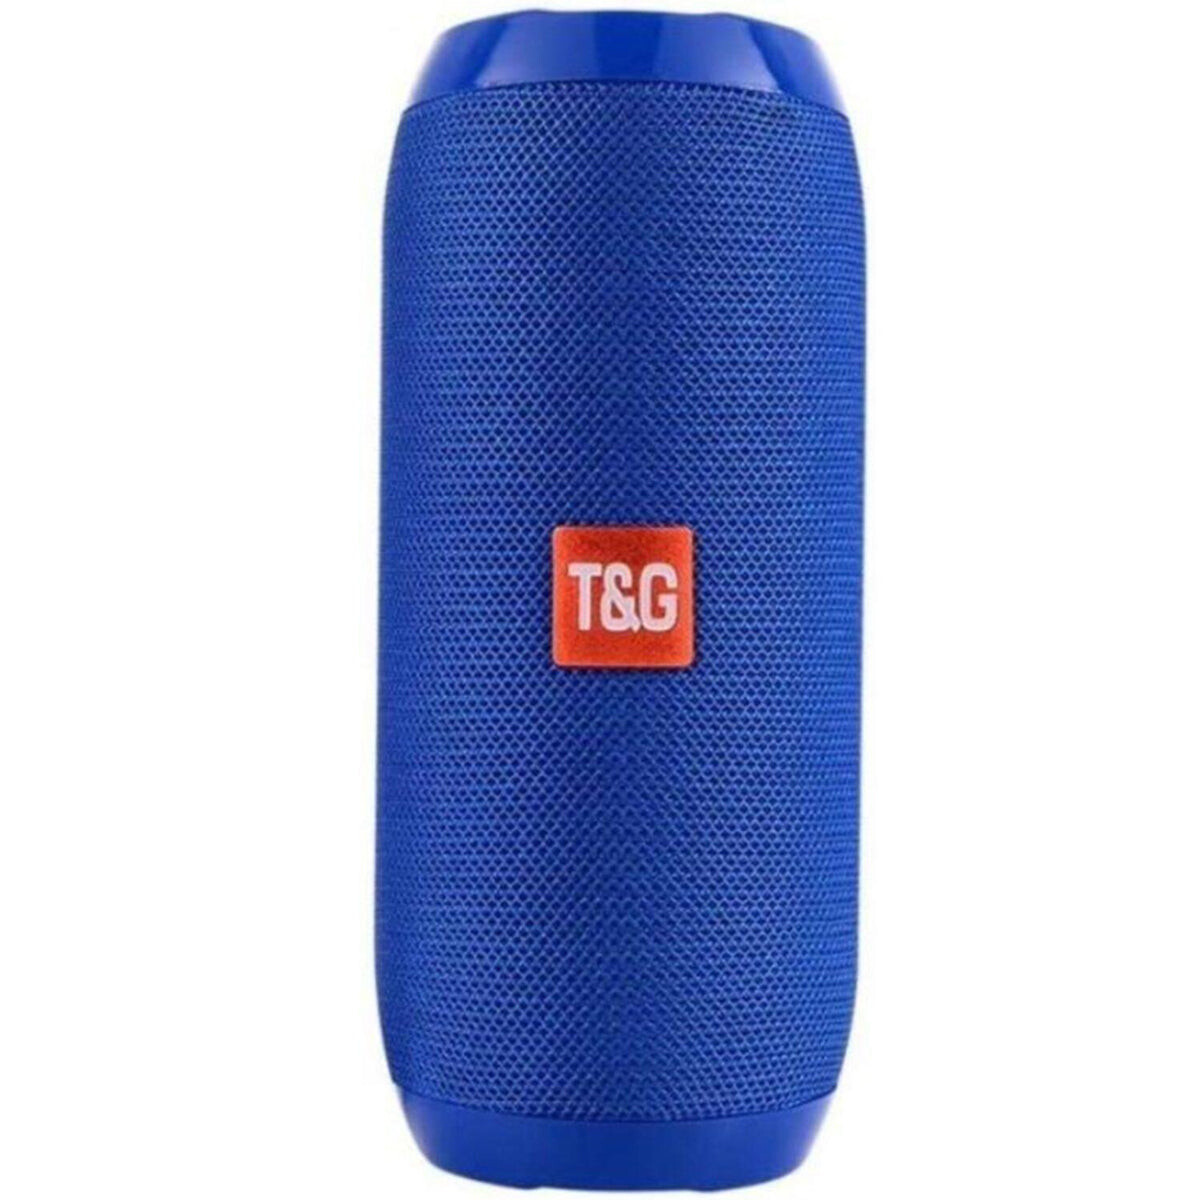 Parlante Bluetooth TyG Premium R/agua Manos Libres - Azul 